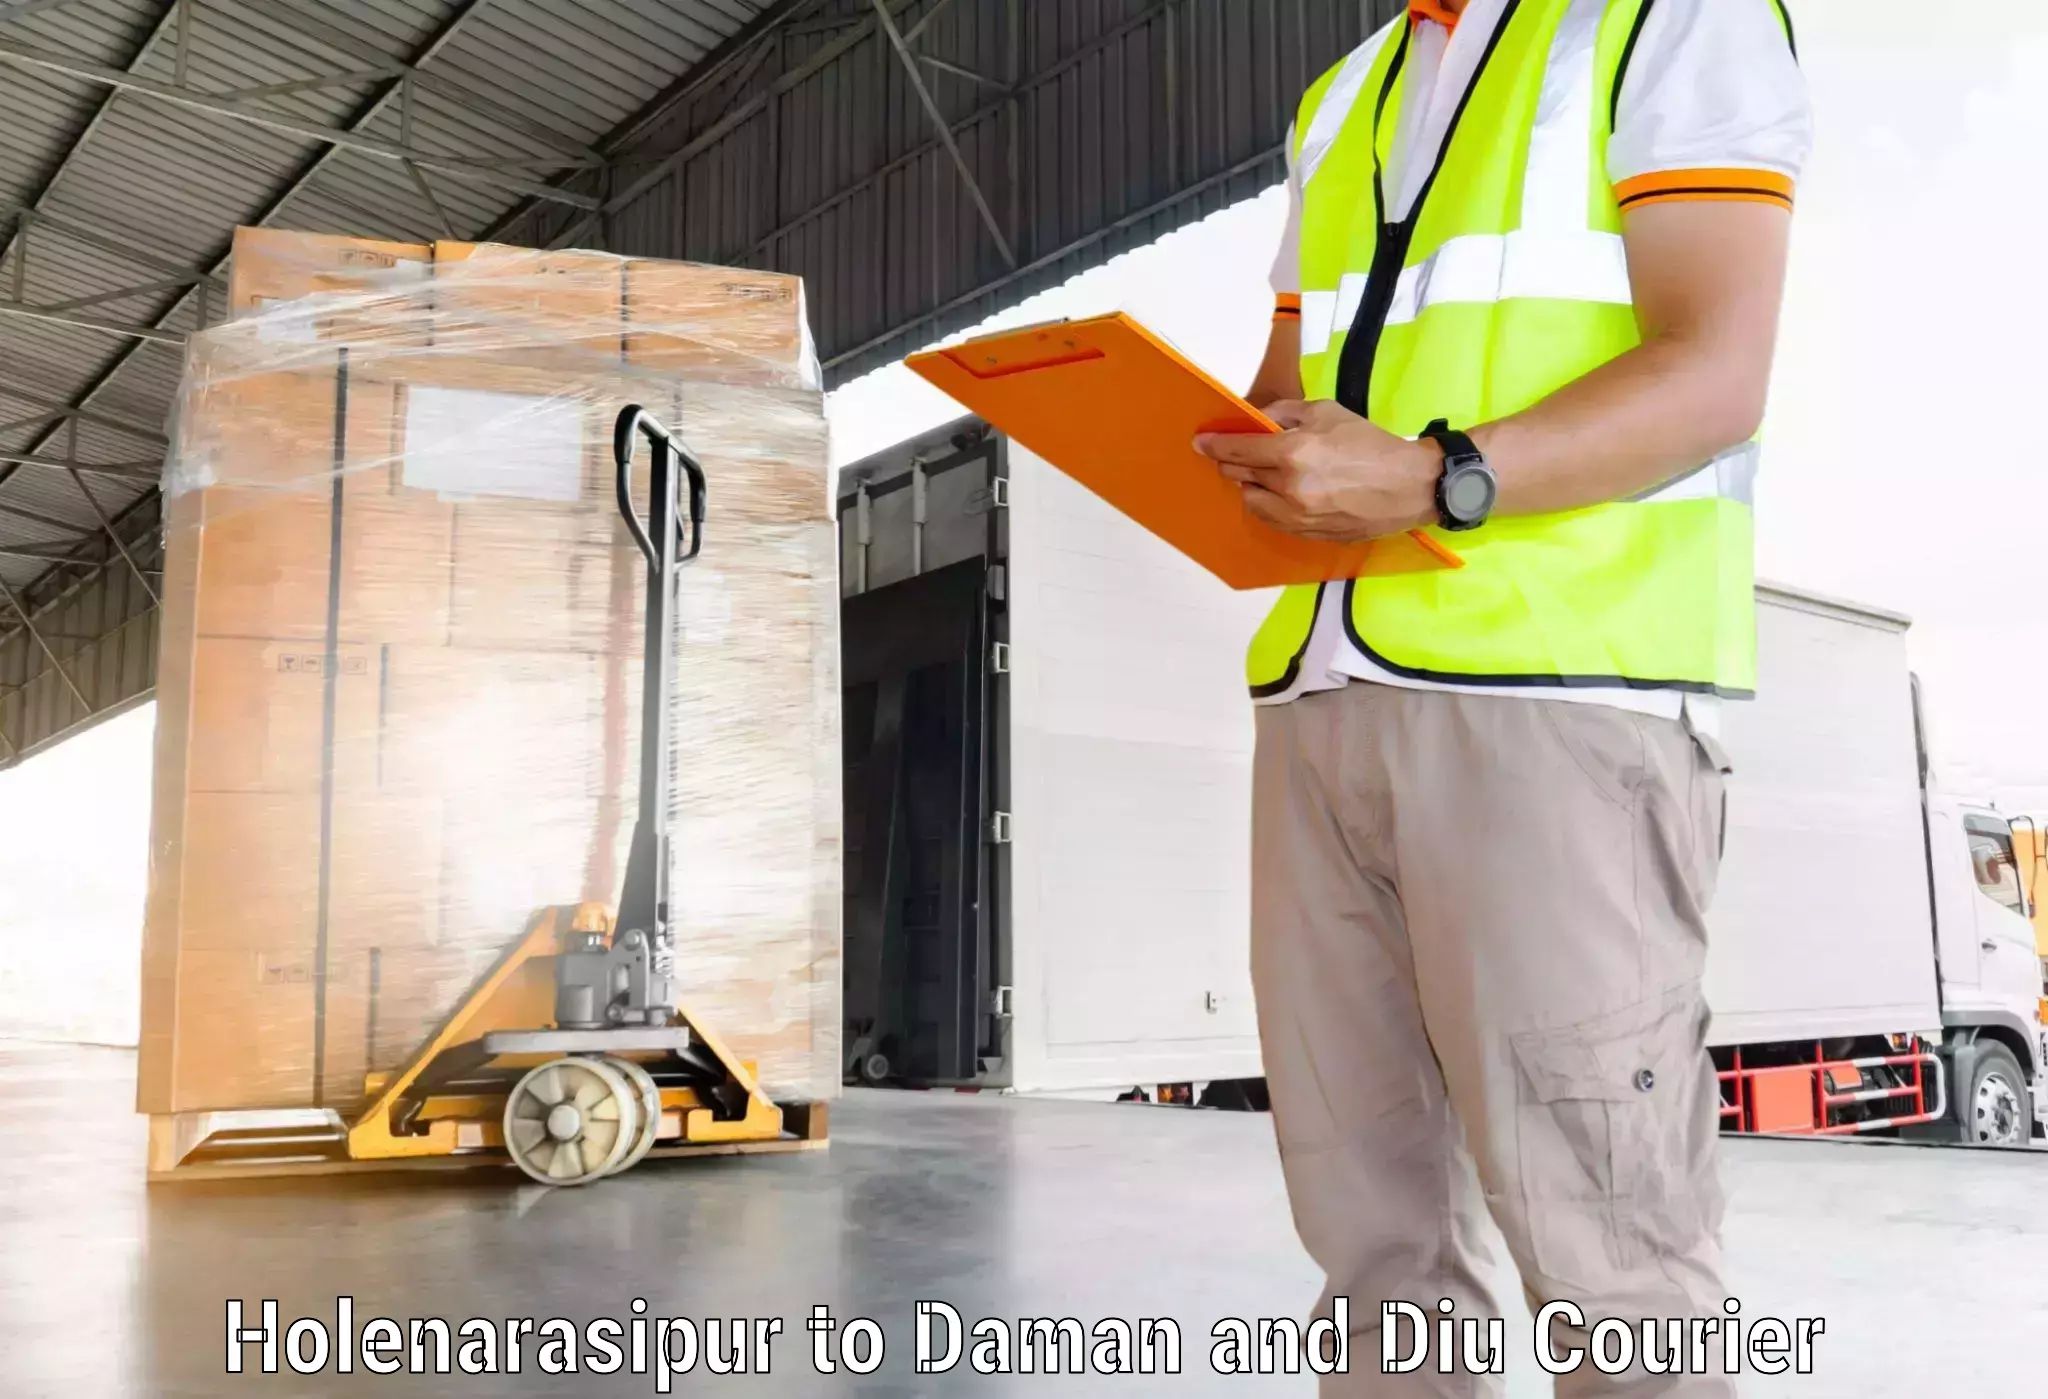 Express logistics providers Holenarasipur to Daman and Diu